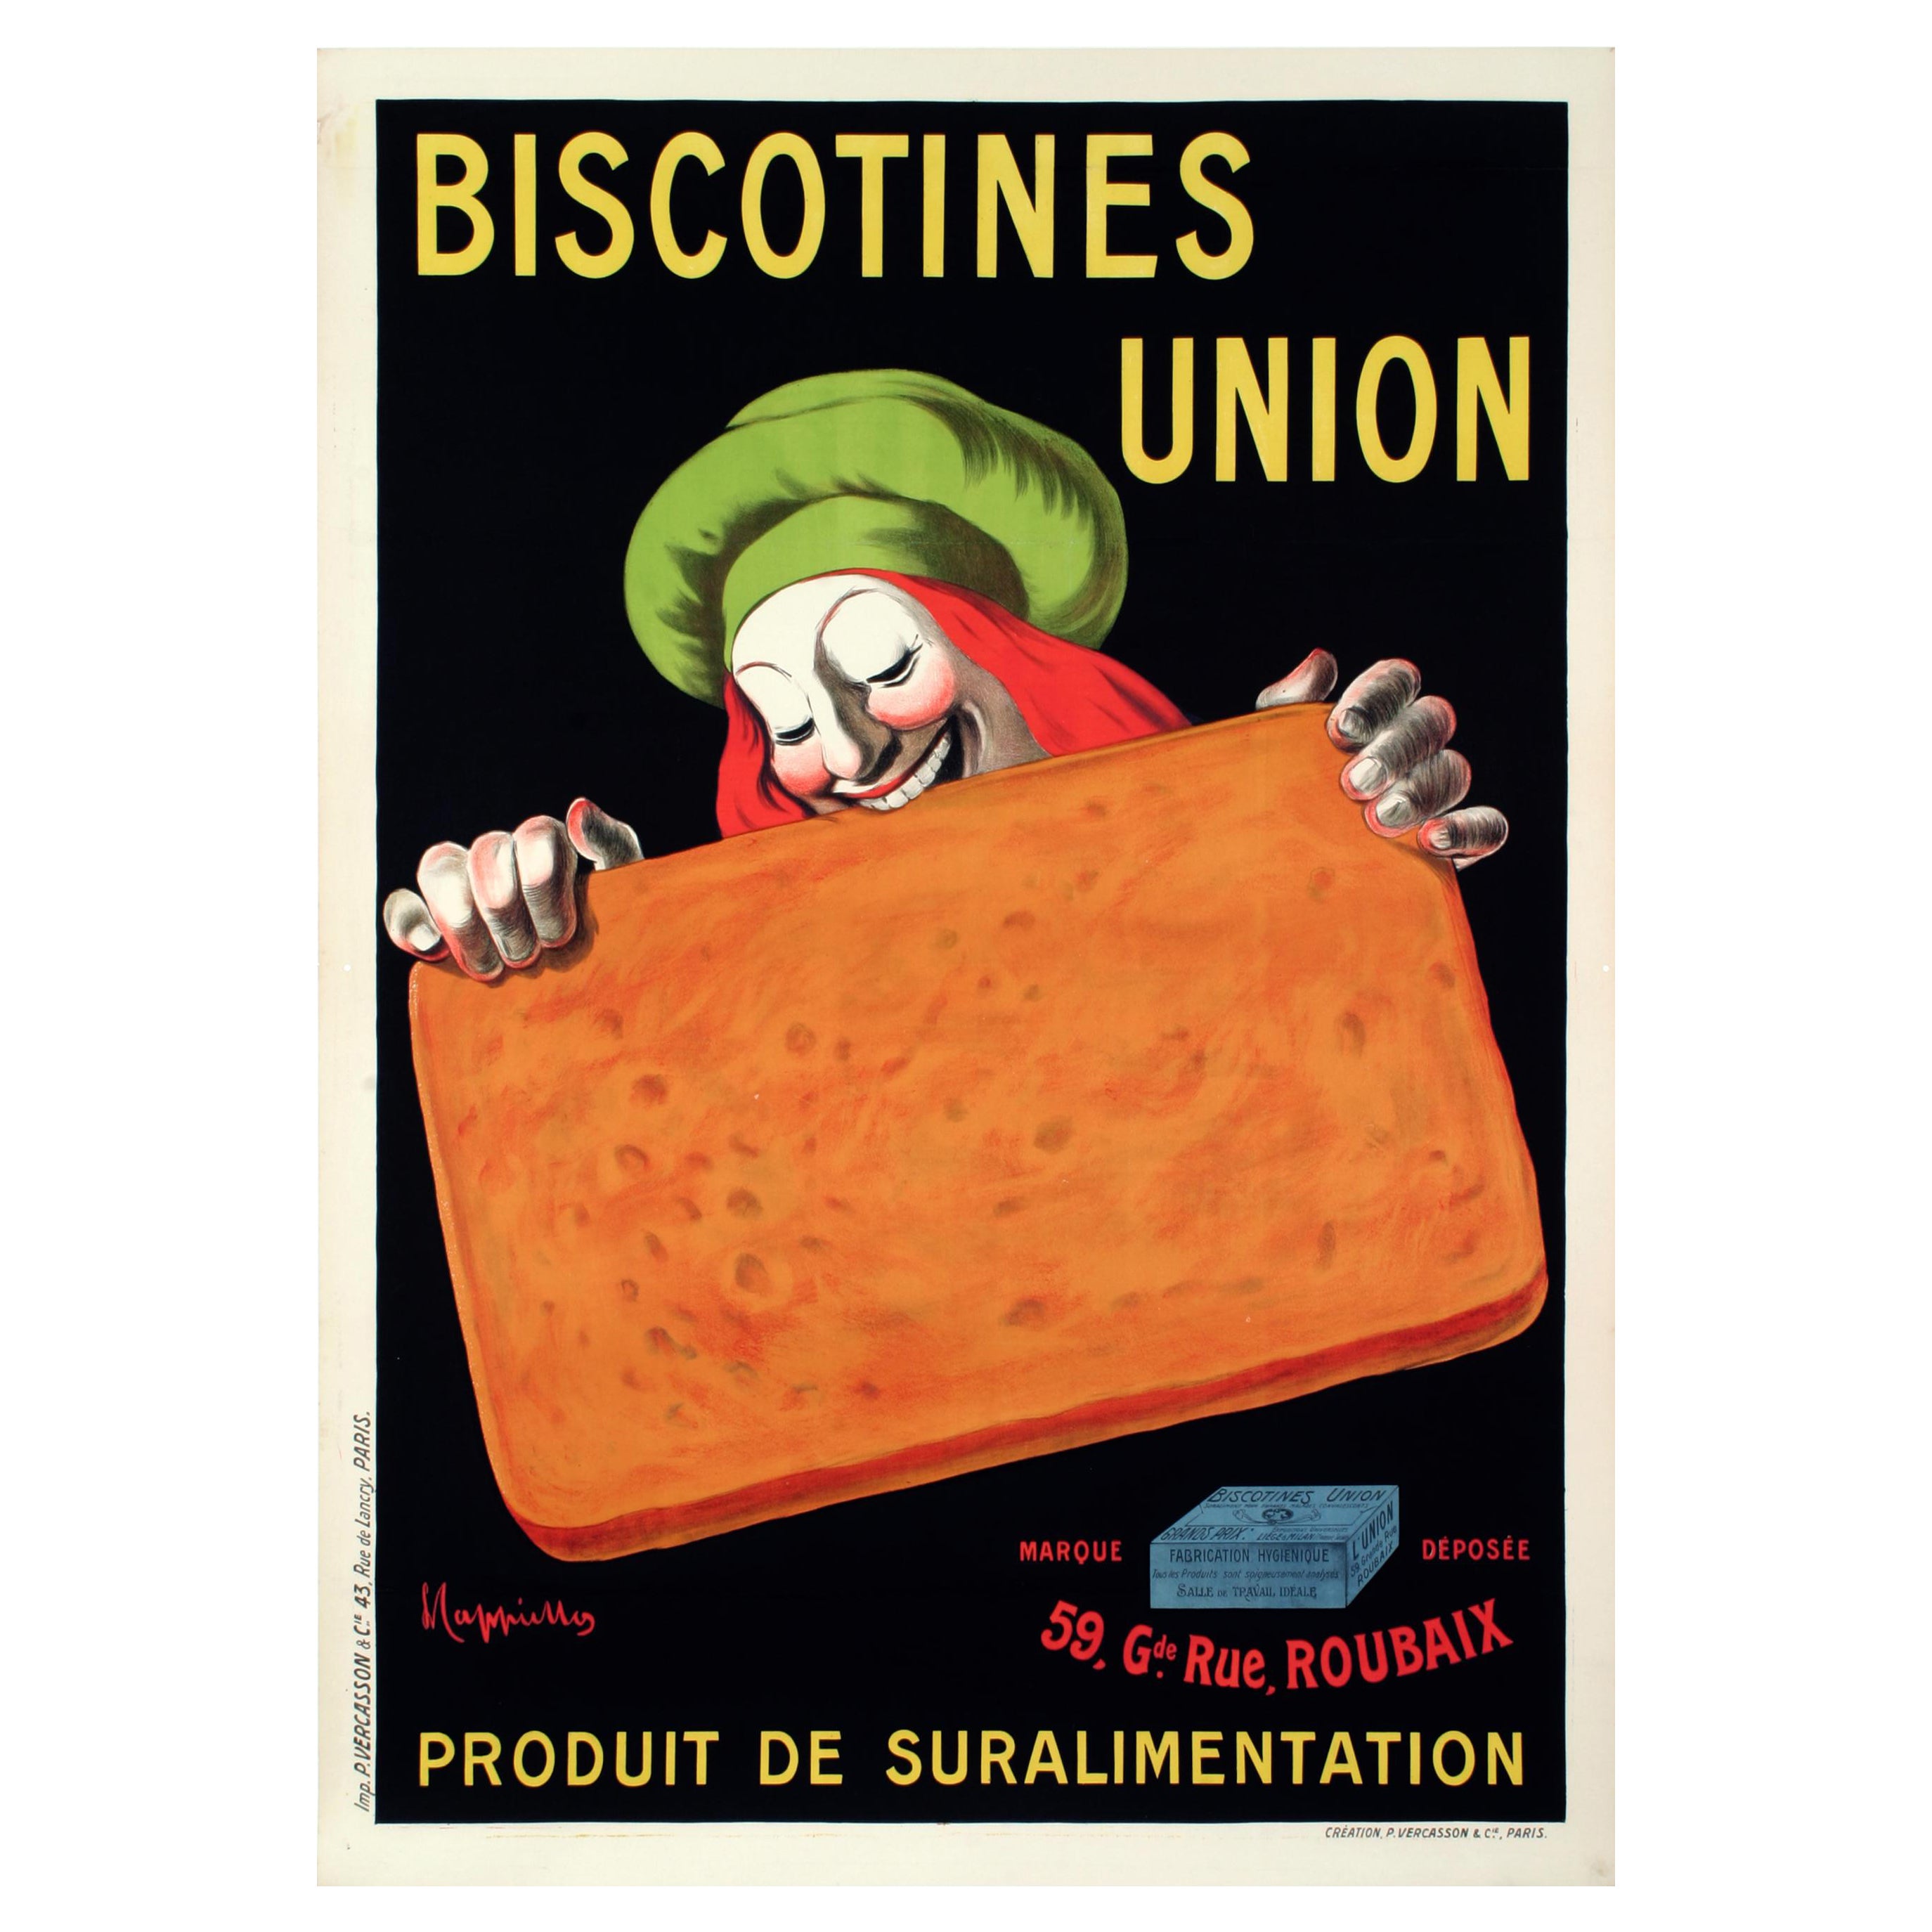 Affiche vintage Biscotines Union, Biscuit, Bread, de Leonetto Cappiello, 1906